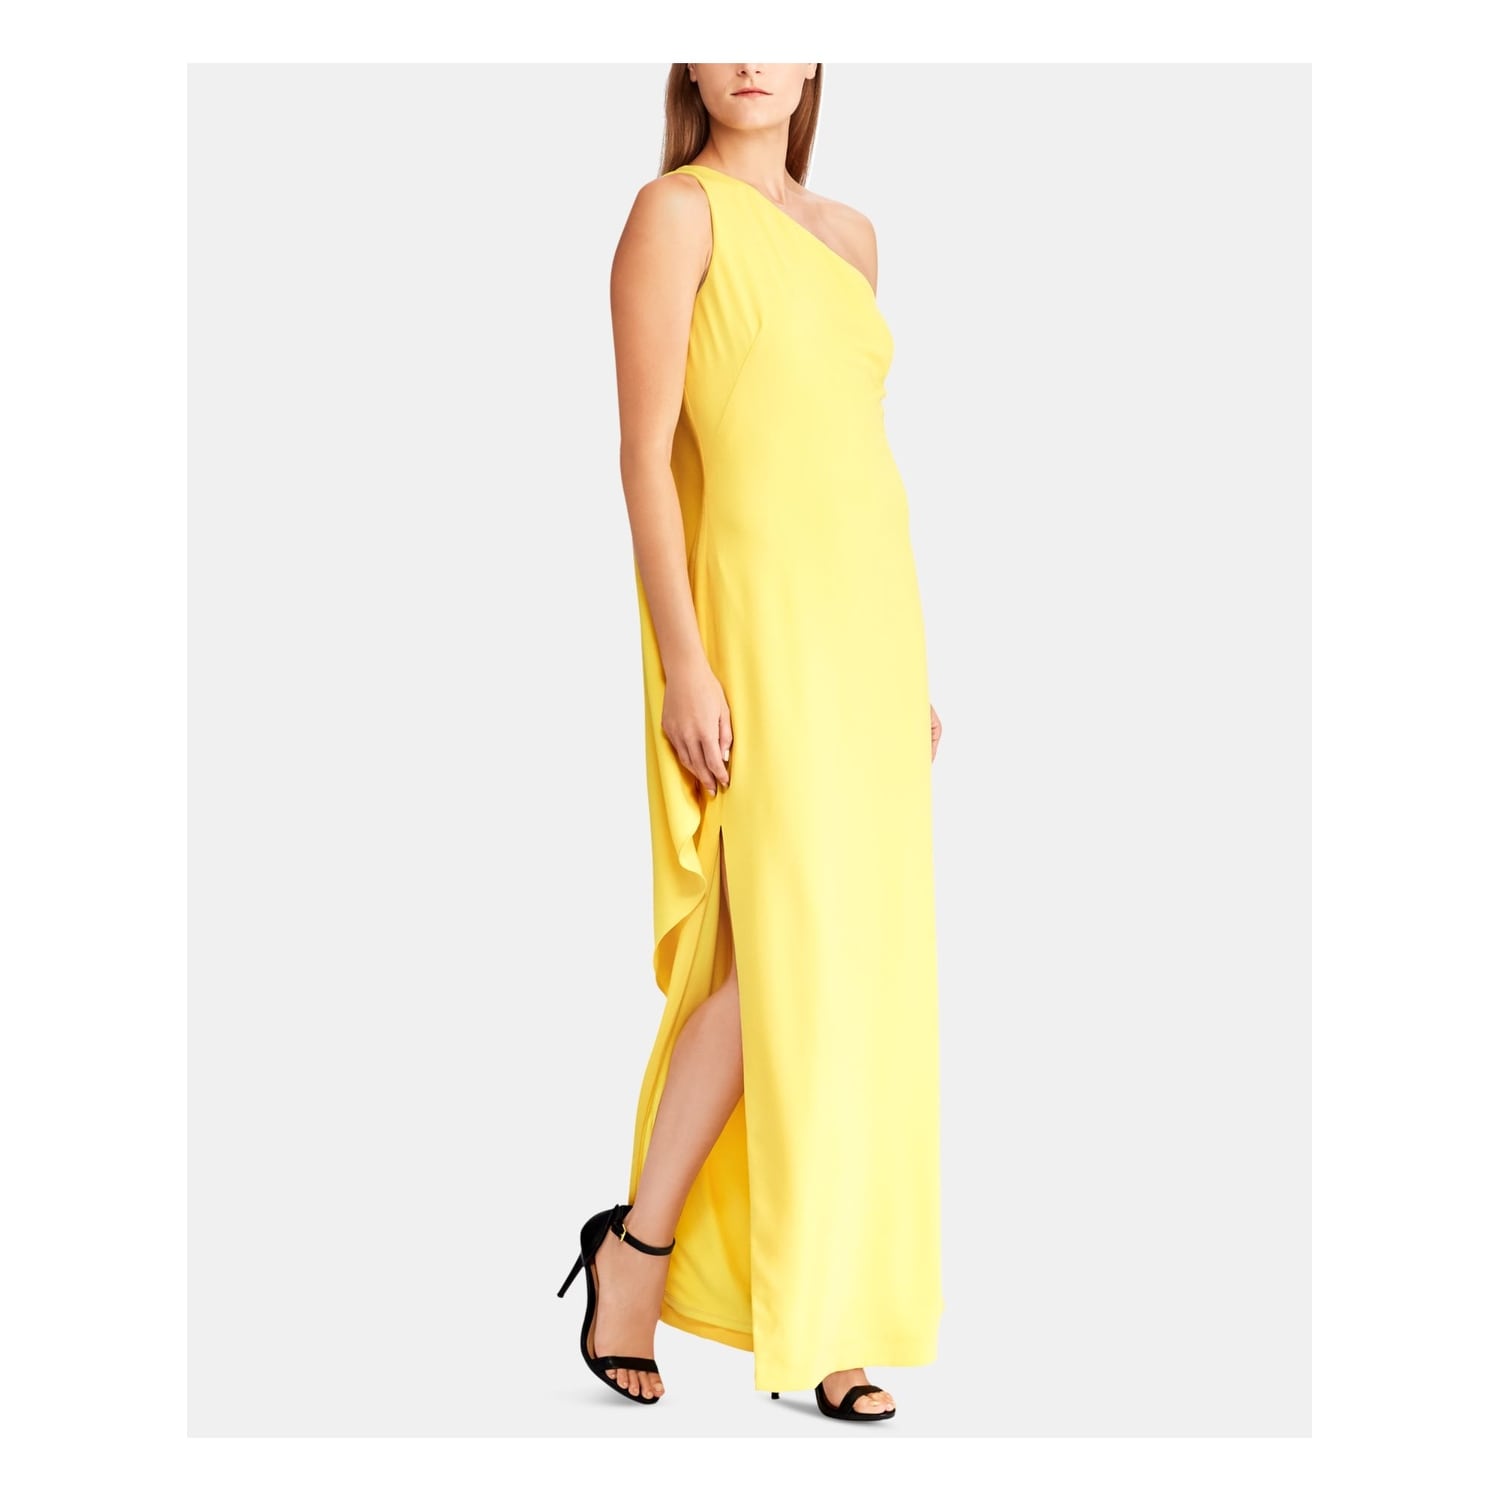 yellow dress size 16